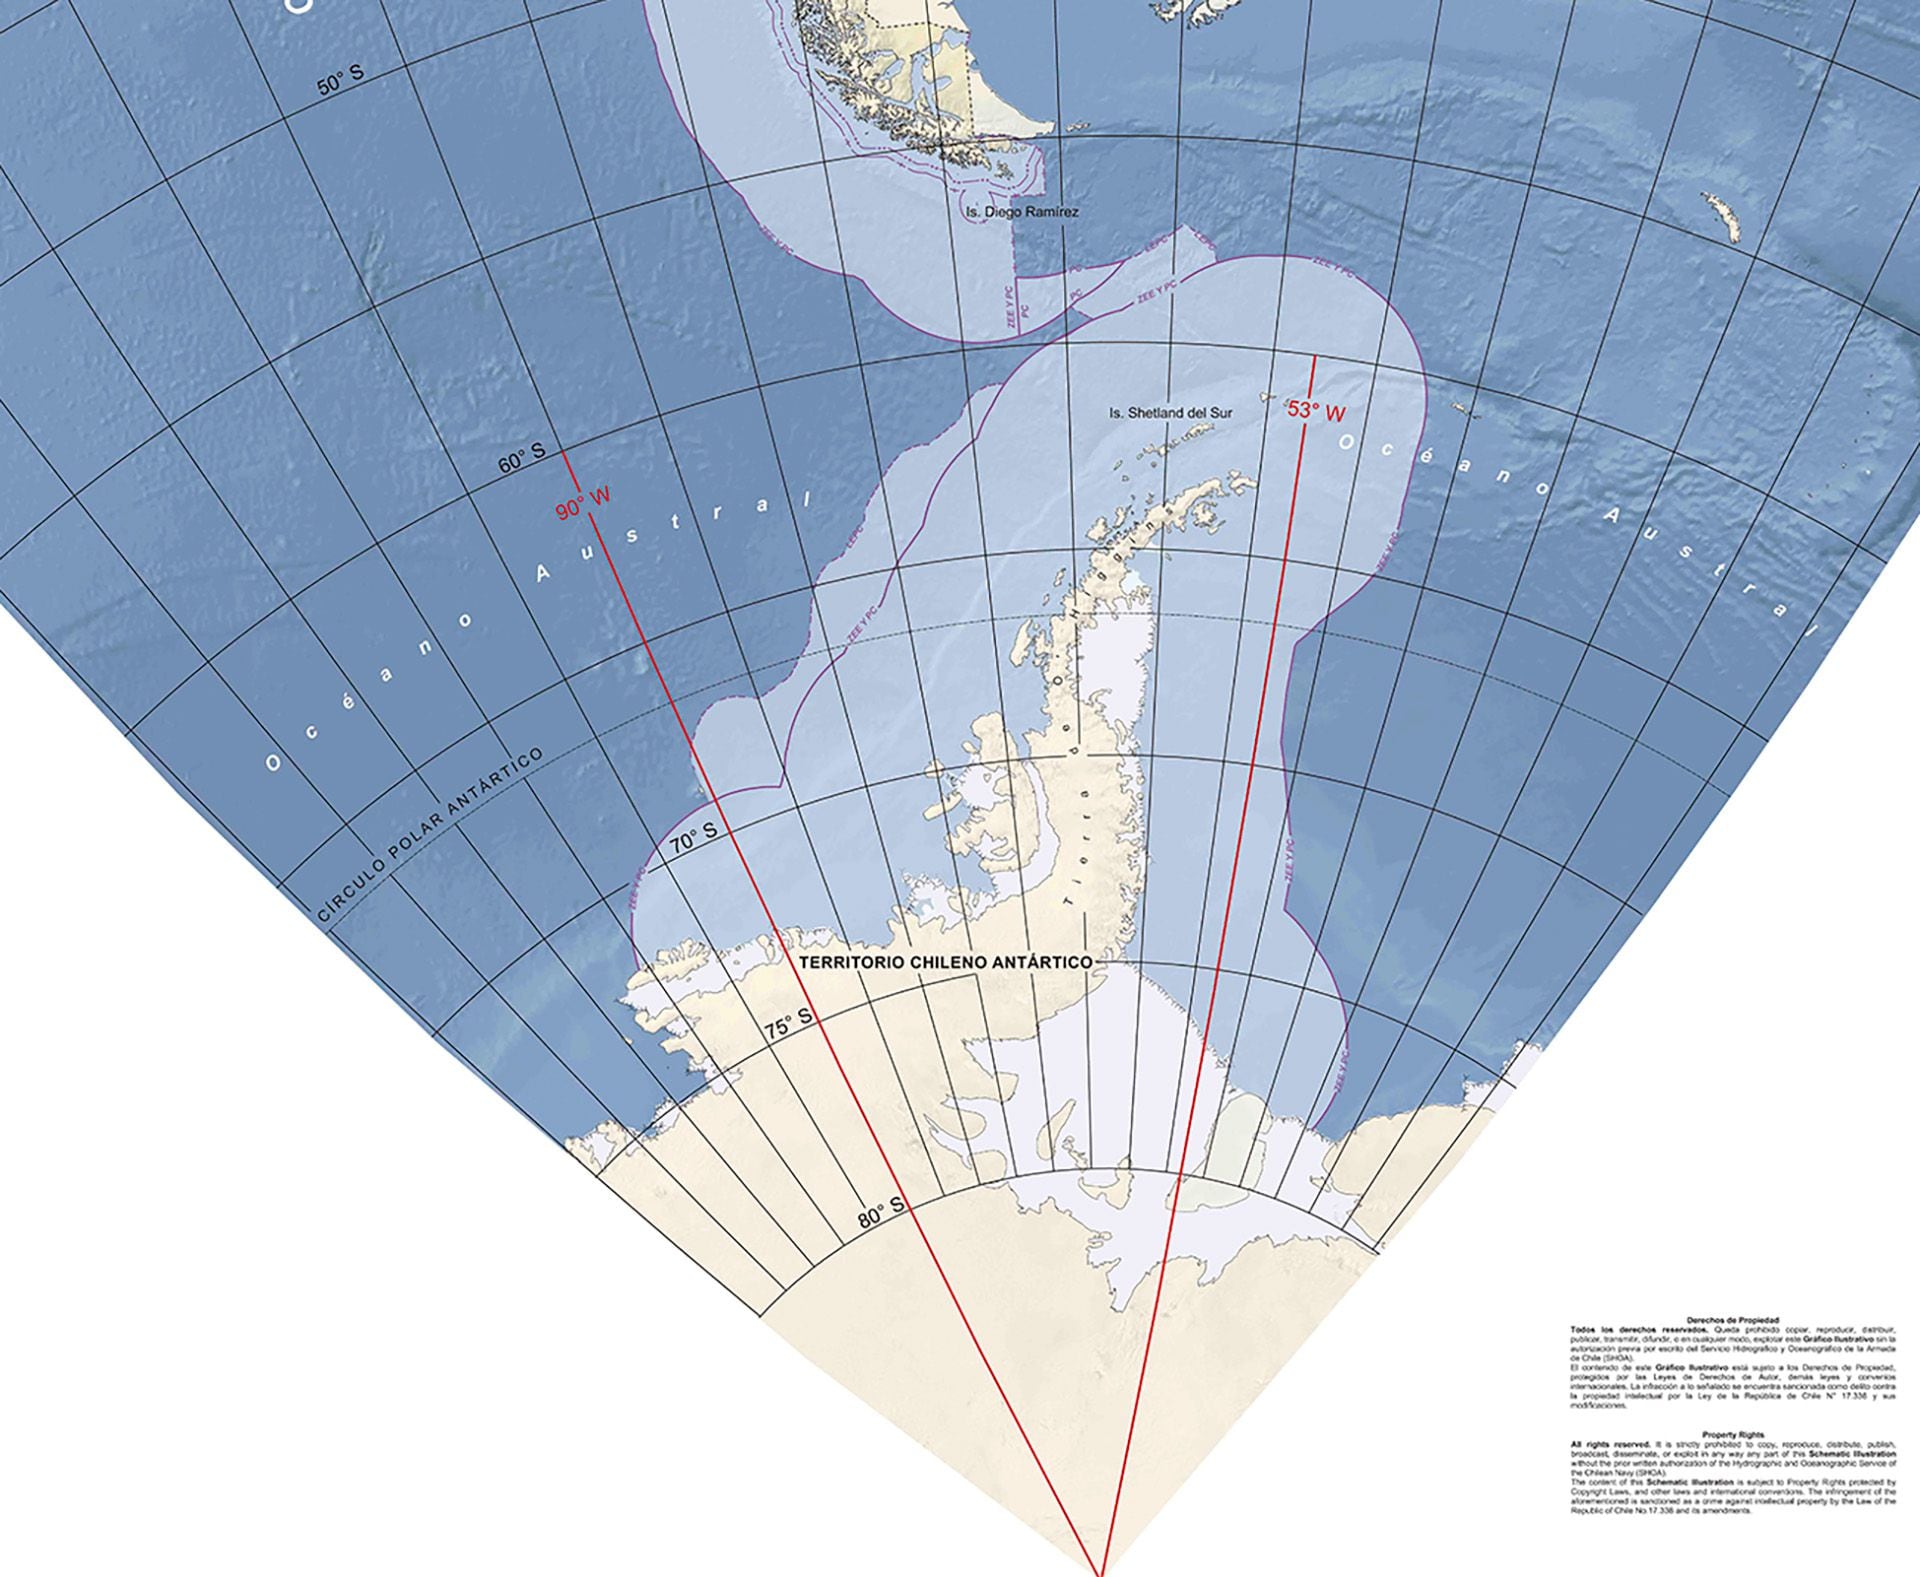 El mapa que publicó la Armada chilena, le adjudica a Chile 5.000 kilómetros cuadrados que se superponen con los que Argentina reconoció como su plataforma continental desde 2009.
